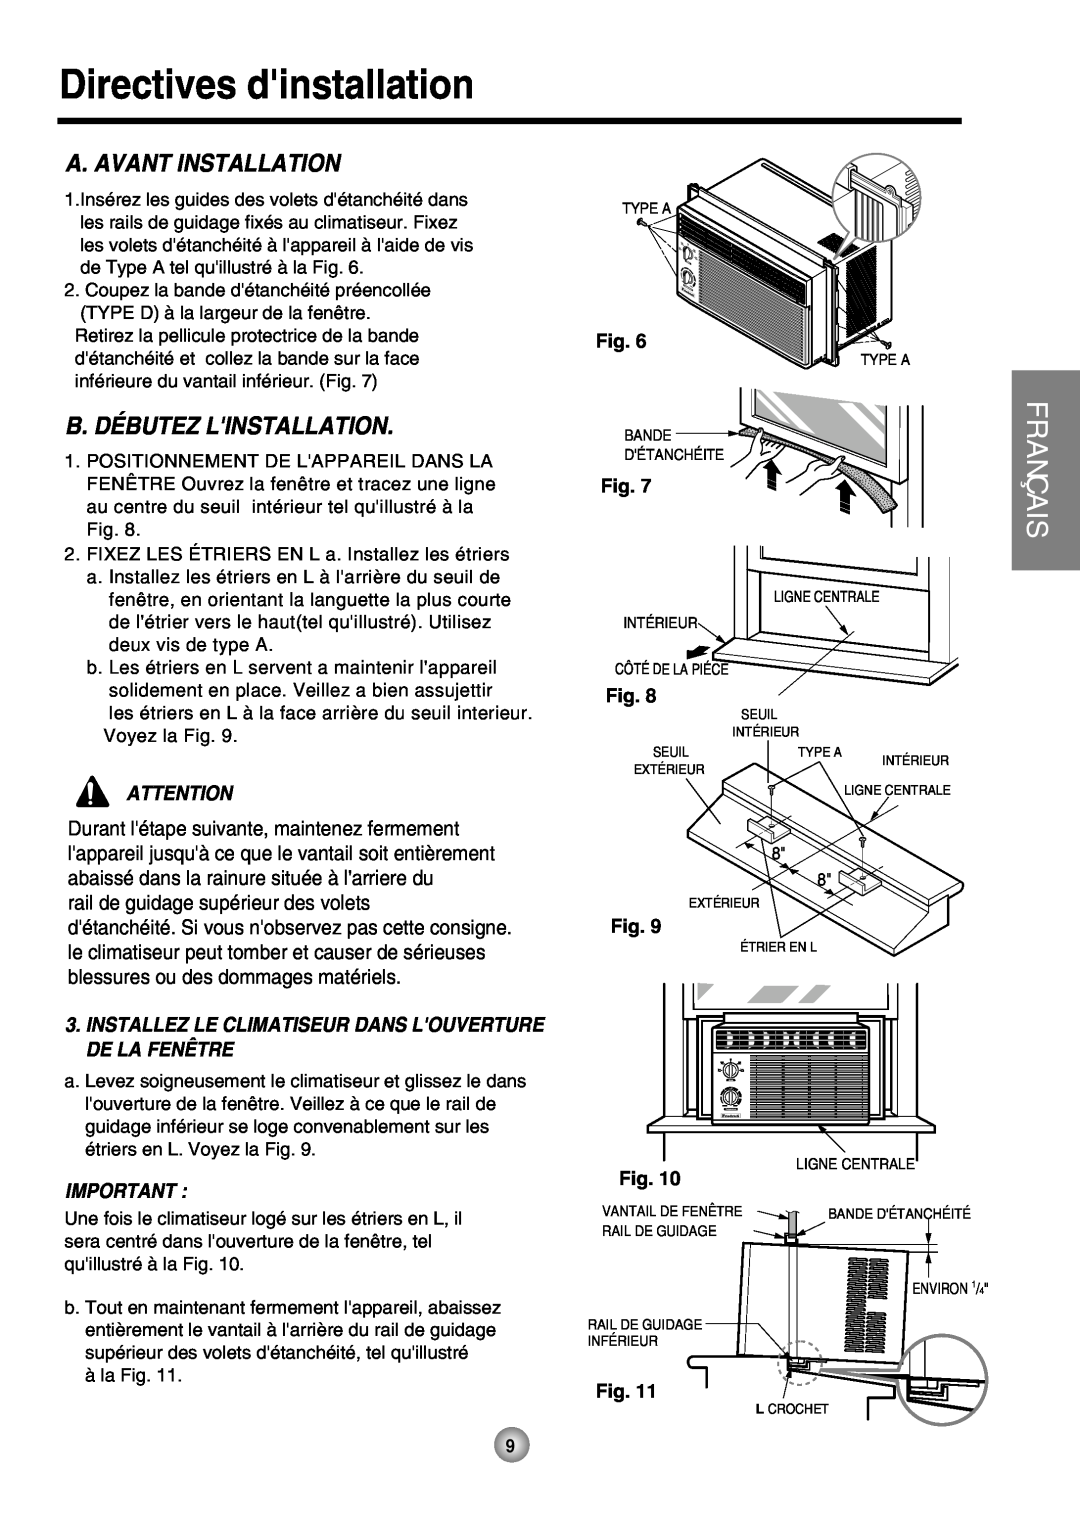 Friedrich ZStar operation manual A. Avant Installation, B. Débutez Linstallation, Directives dinstallation, Français 